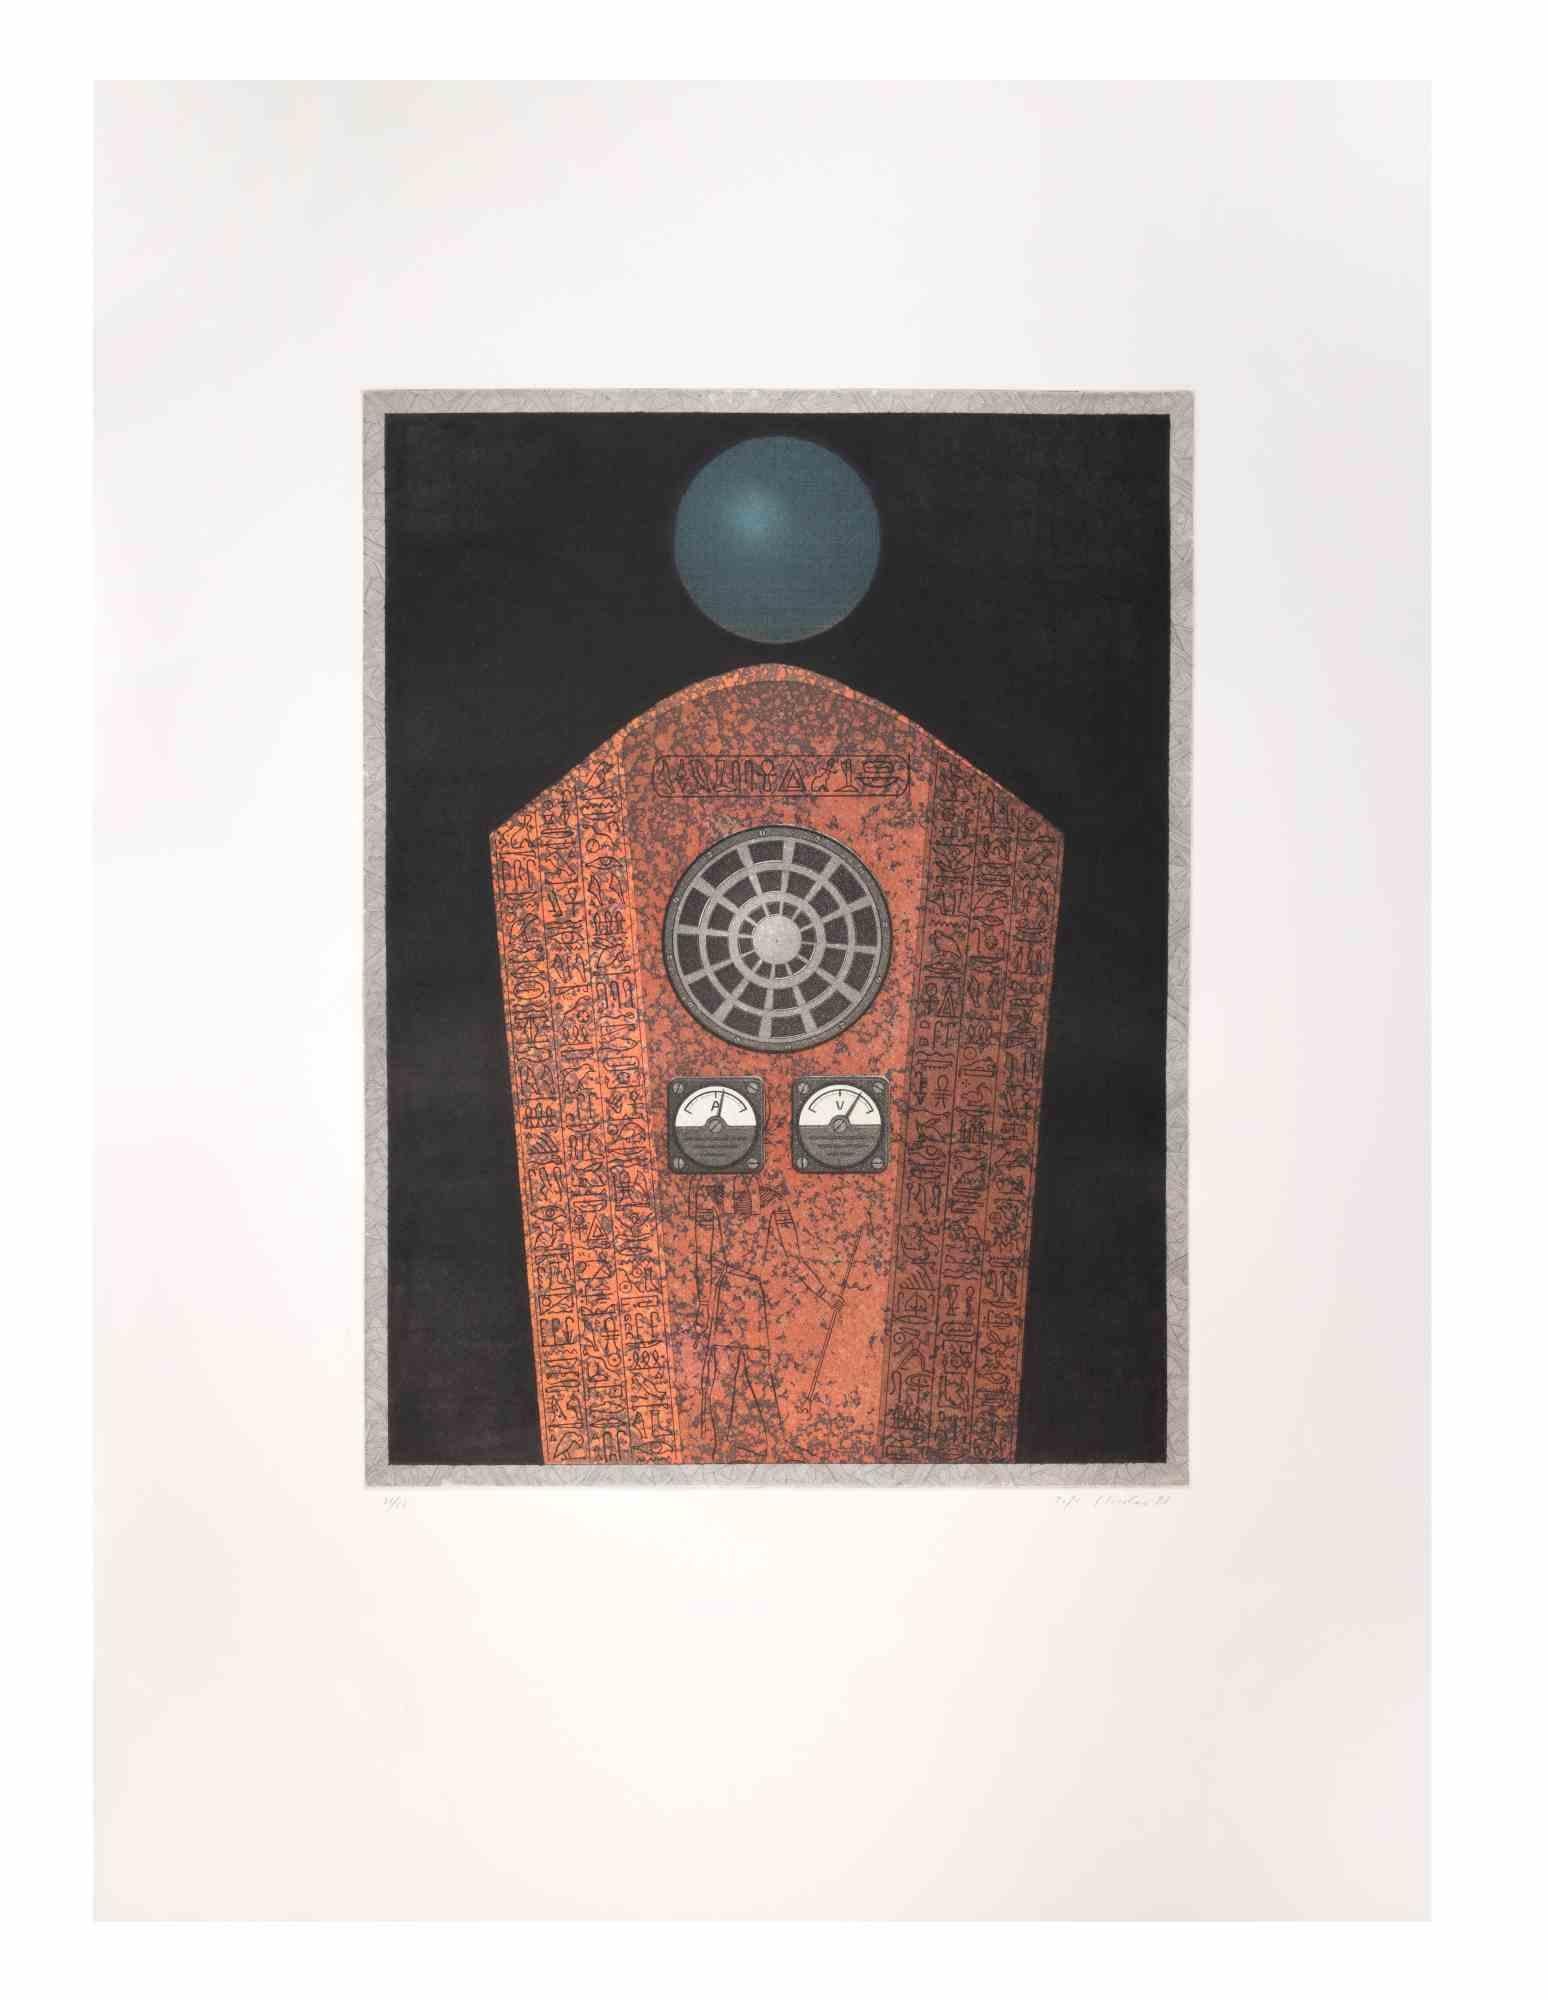 Radio Caire ist ein zeitgenössisches Kunstwerk des Künstlers Fifo Stricker aus dem Jahr 1982.

Gemischte farbige Aquatinta und Radierung. 

Vom Künstler am rechten unteren Rand handsigniert und datiert.

Am linken unteren Rand nummeriert. Auflage